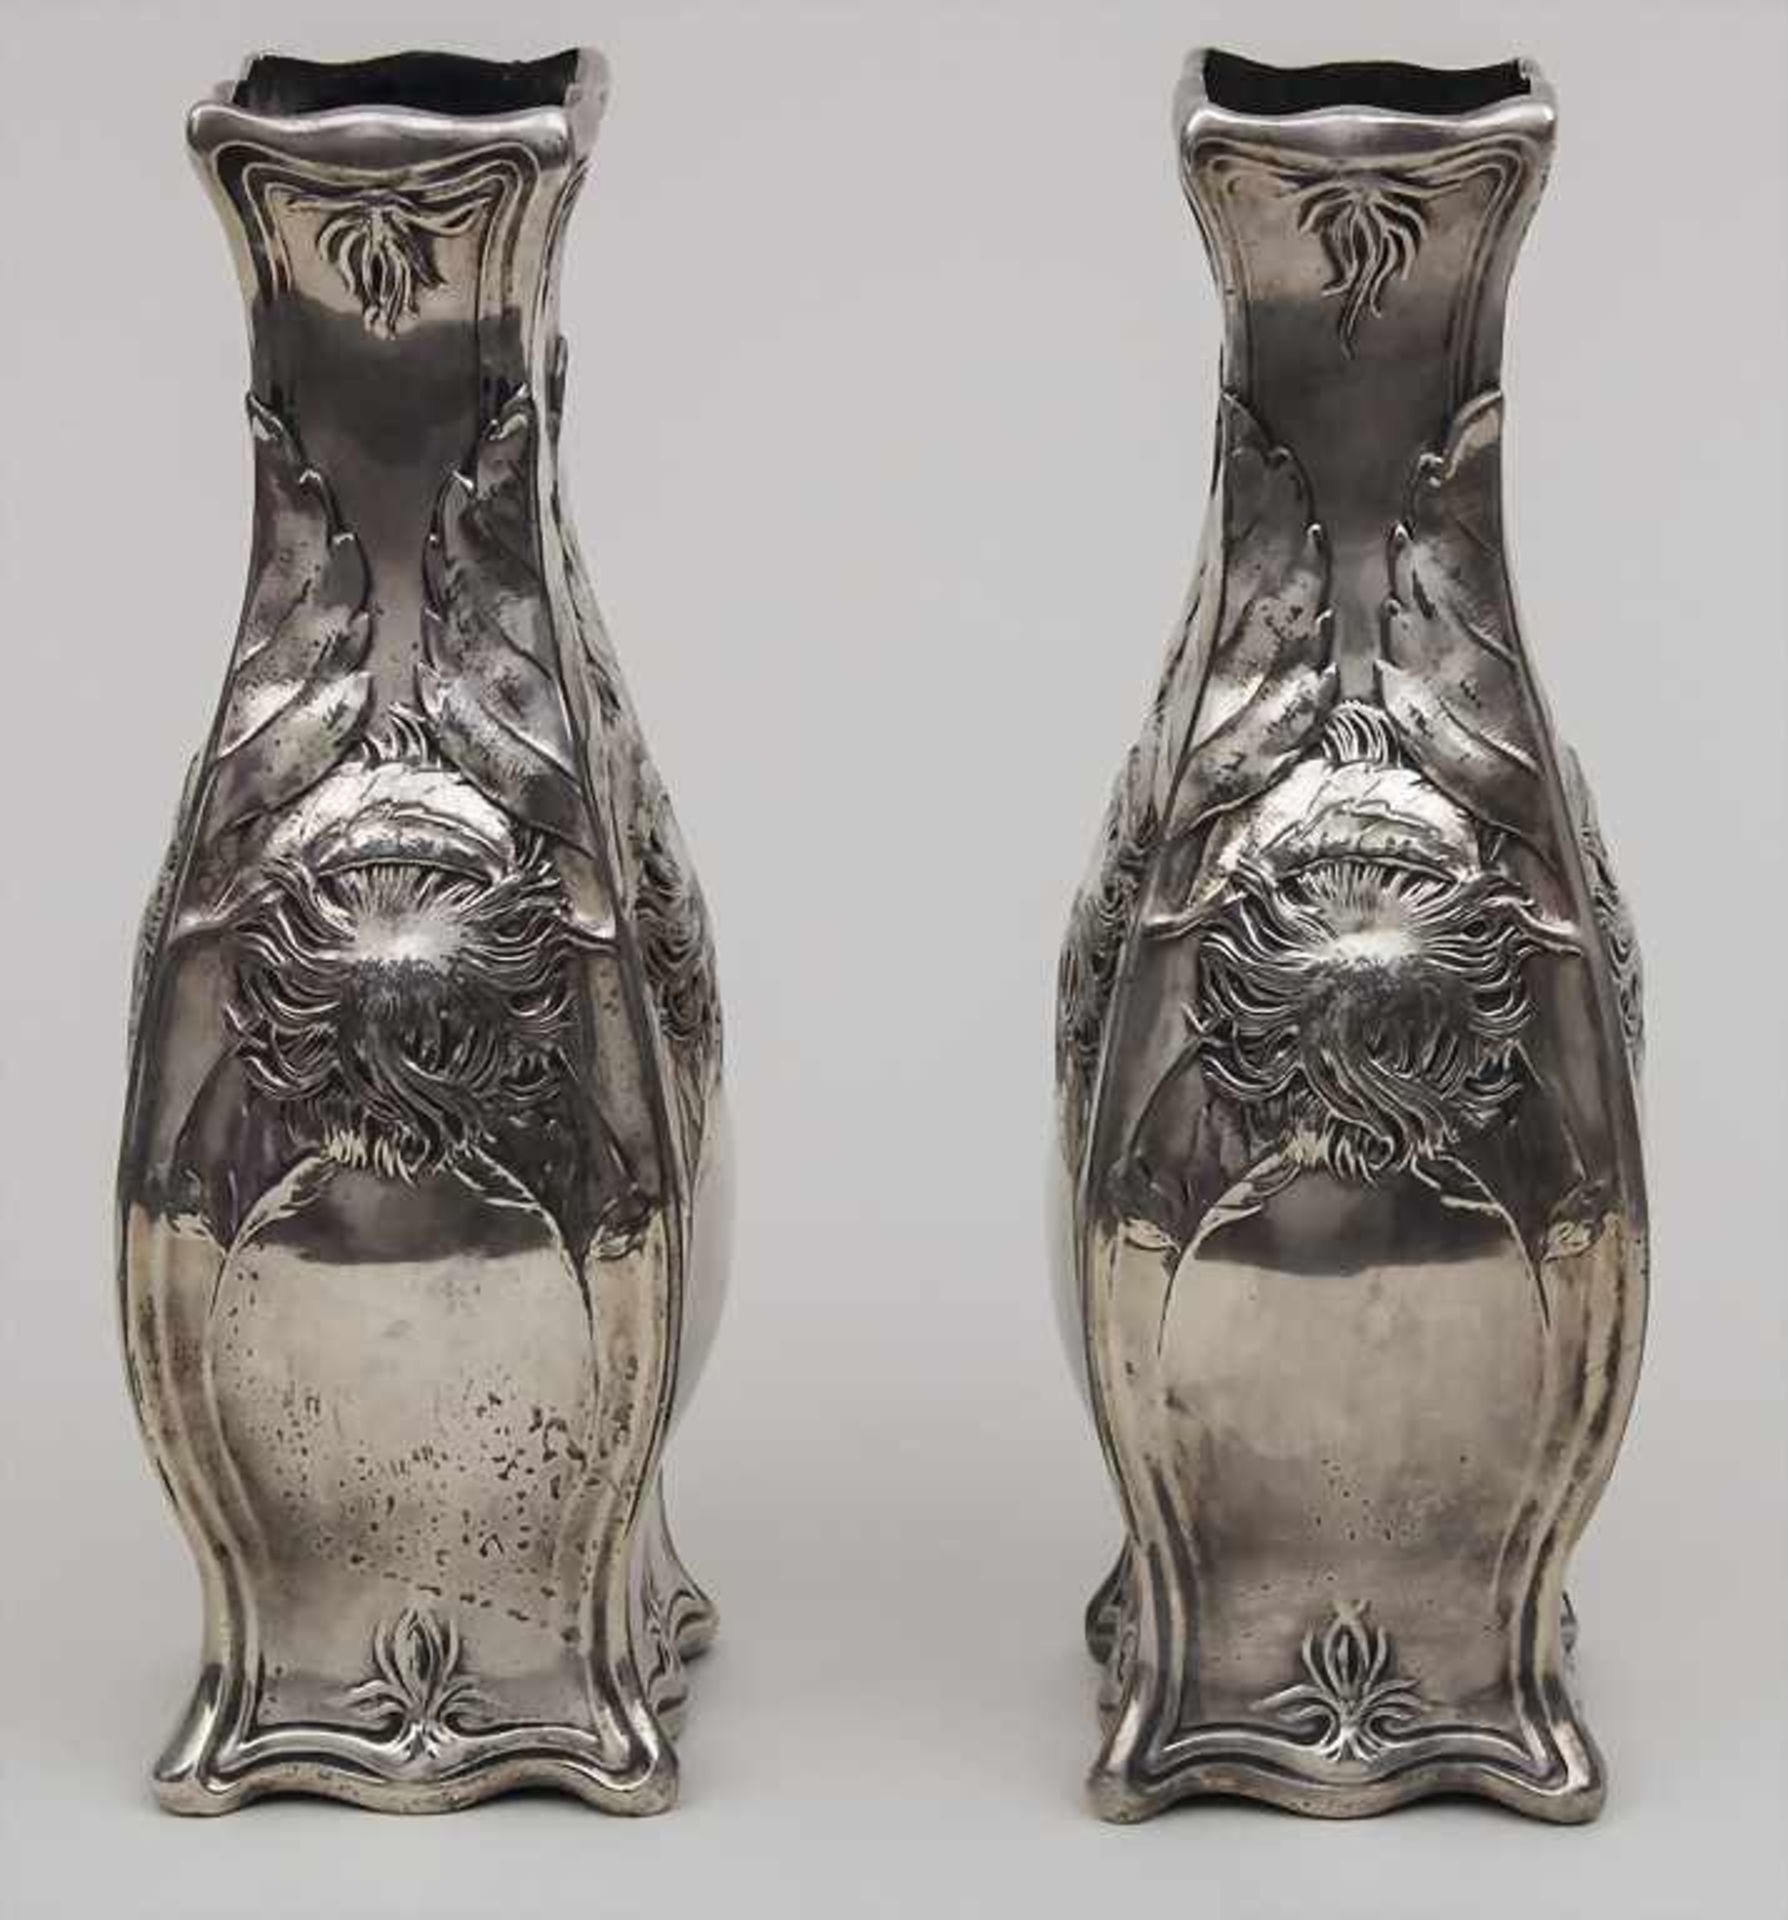 Paar Jugendstil Vasen mit Baum-Hasel / A pair of Art Nouveau vases with hazelnut, Gallia, Christofle